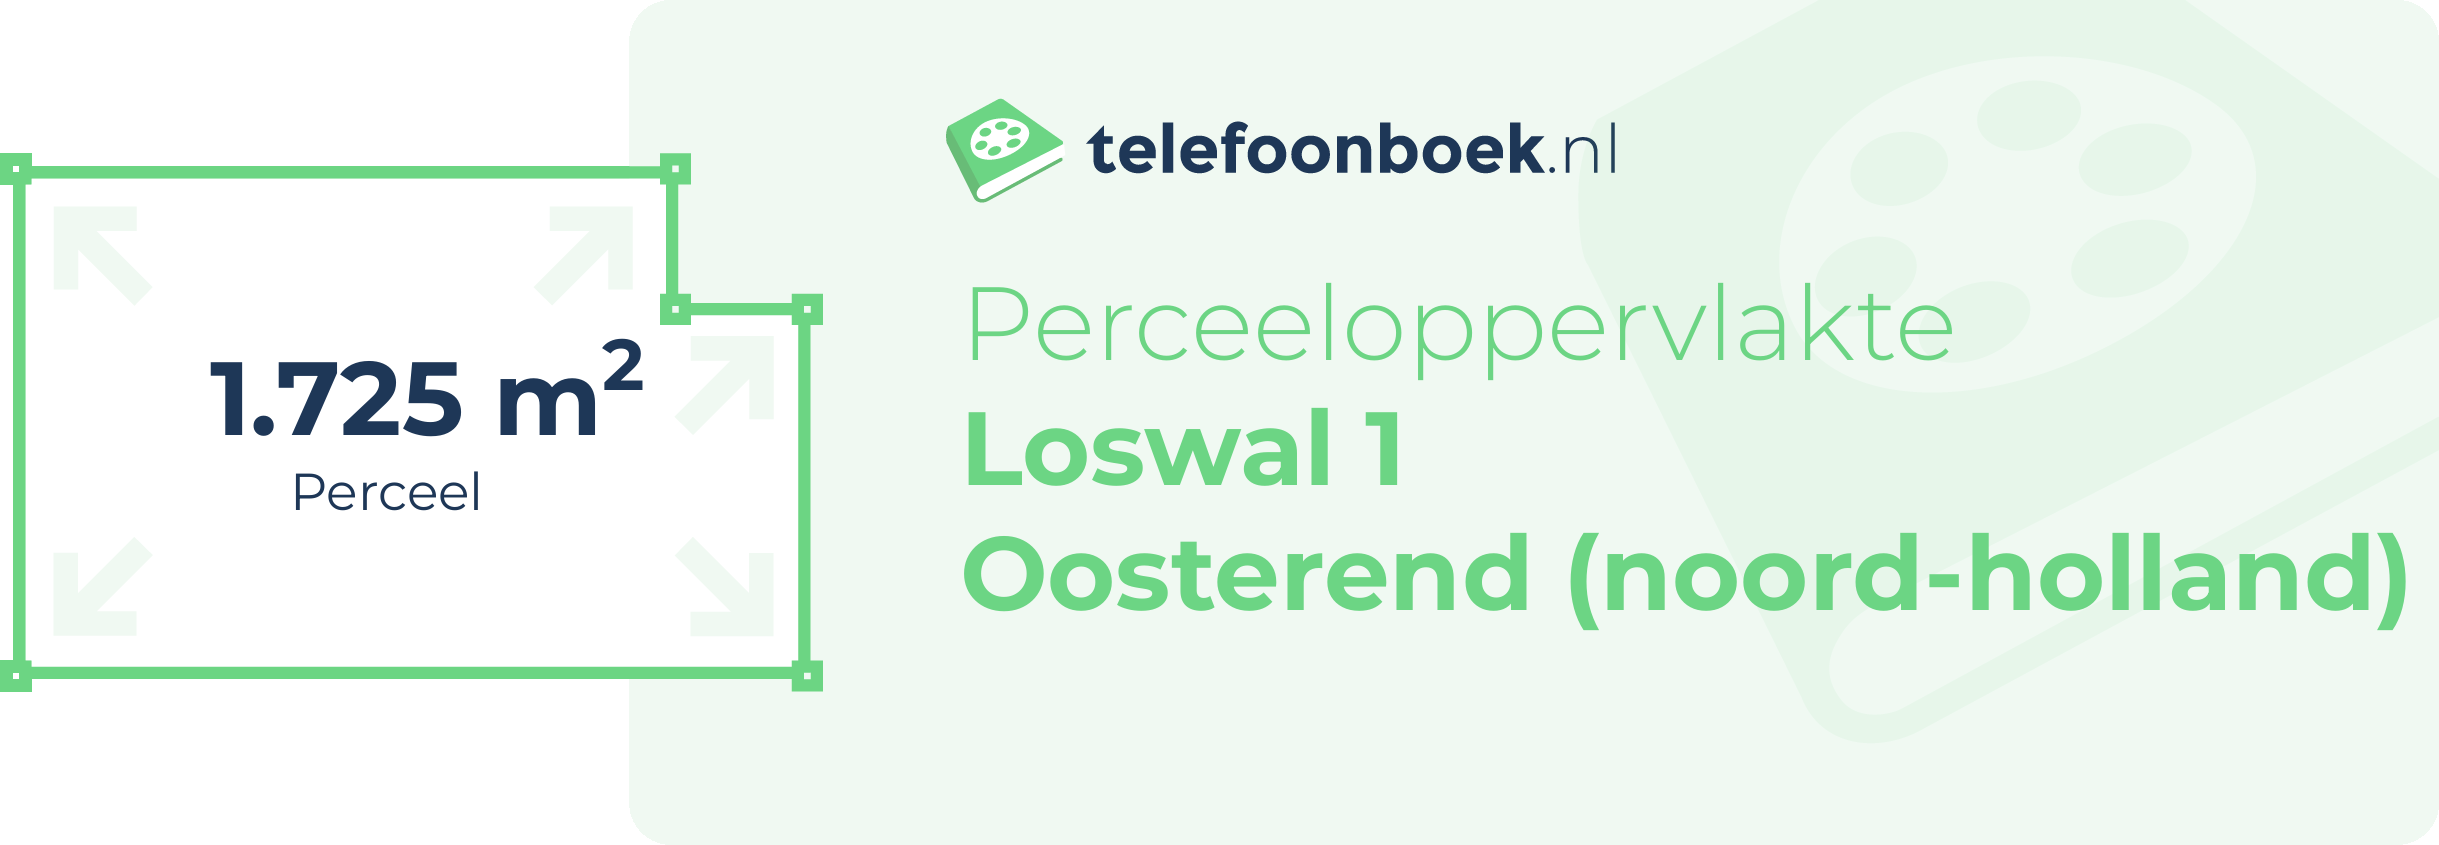 Perceeloppervlakte Loswal 1 Oosterend (Noord-Holland)